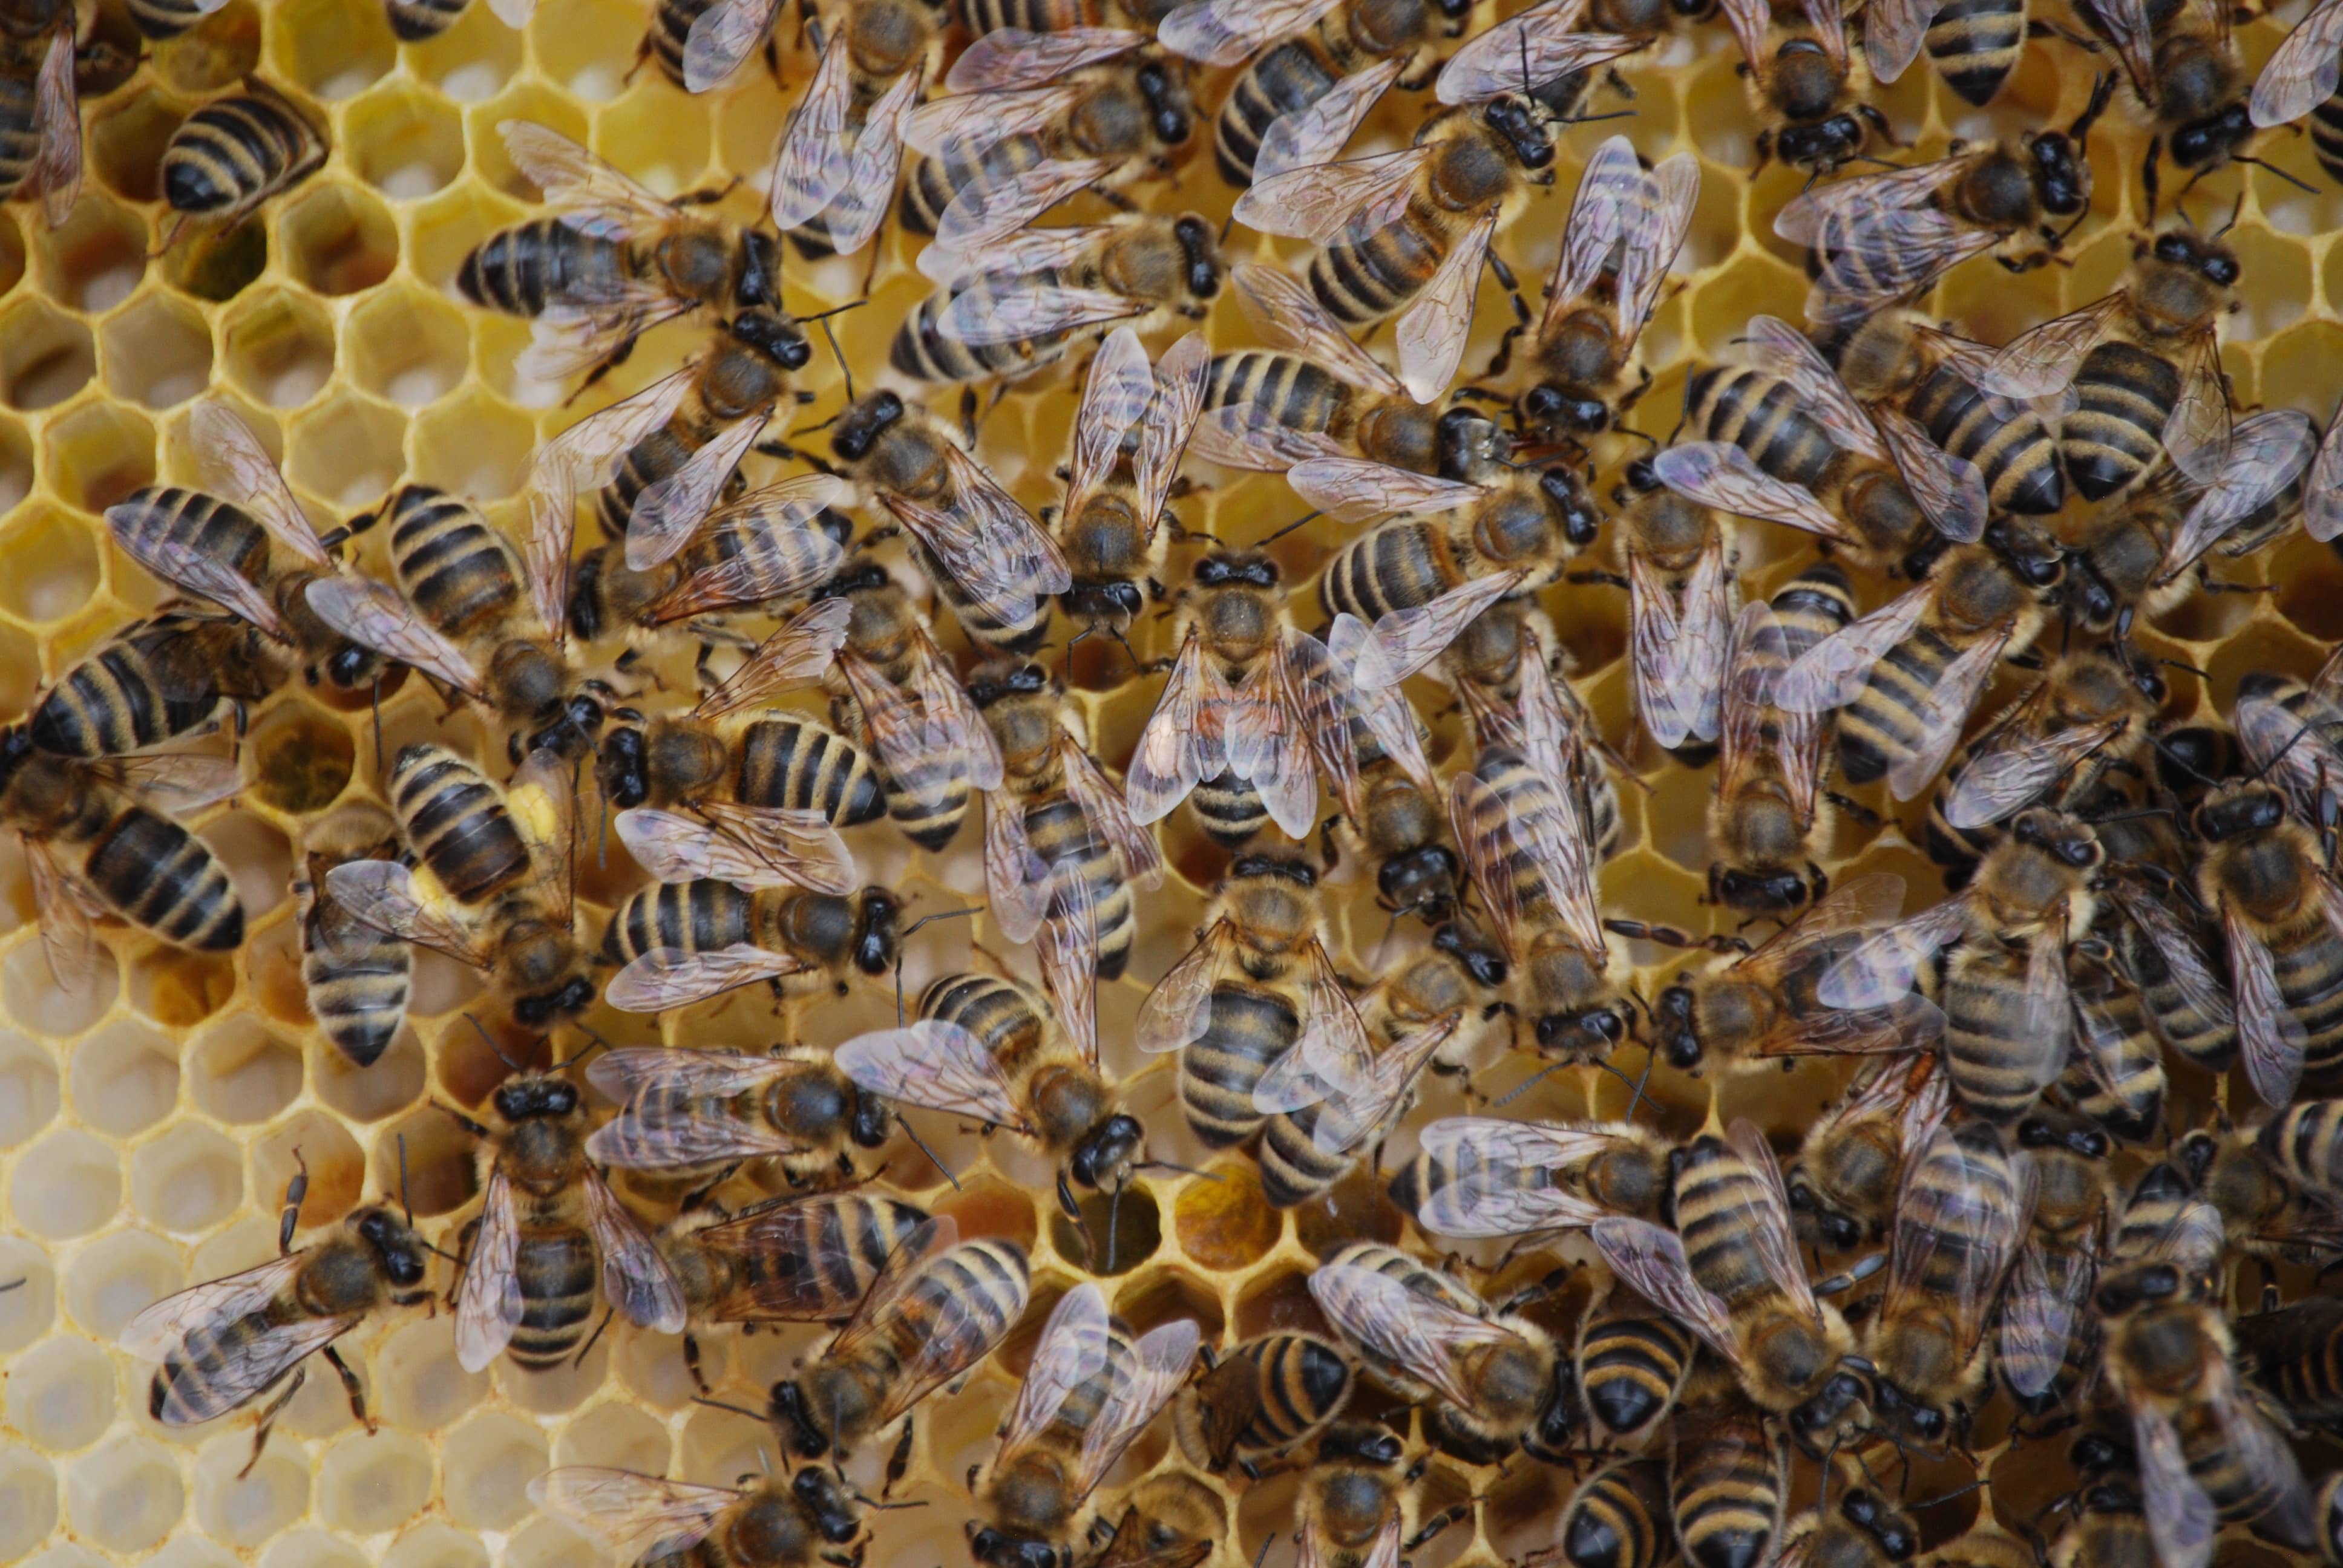 Les abeilles parisiennes : découvrir leurs secrets